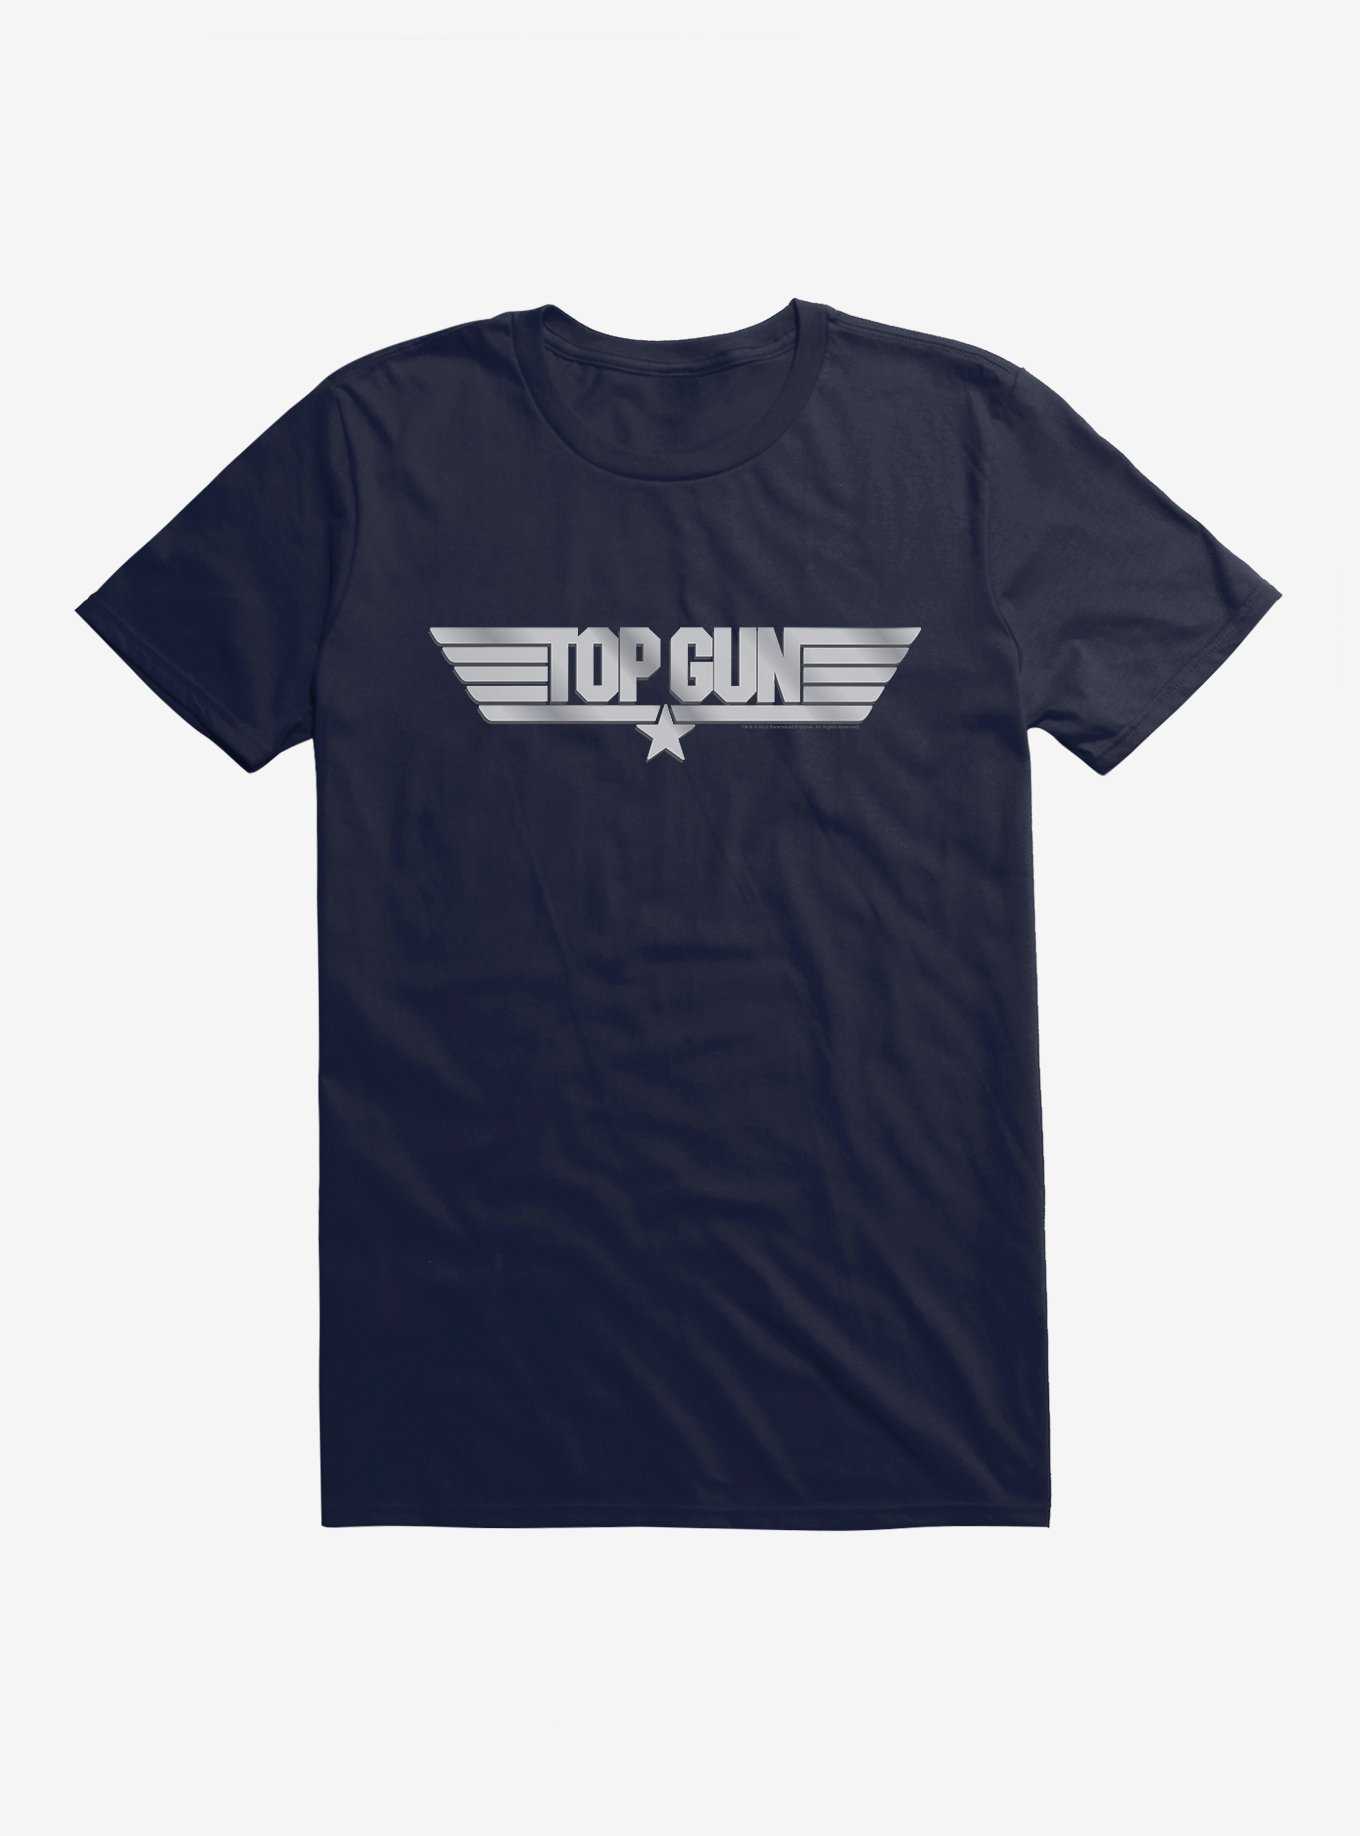 OFFICIAL Top Gun Merchandise & | Hot Shirts Topic